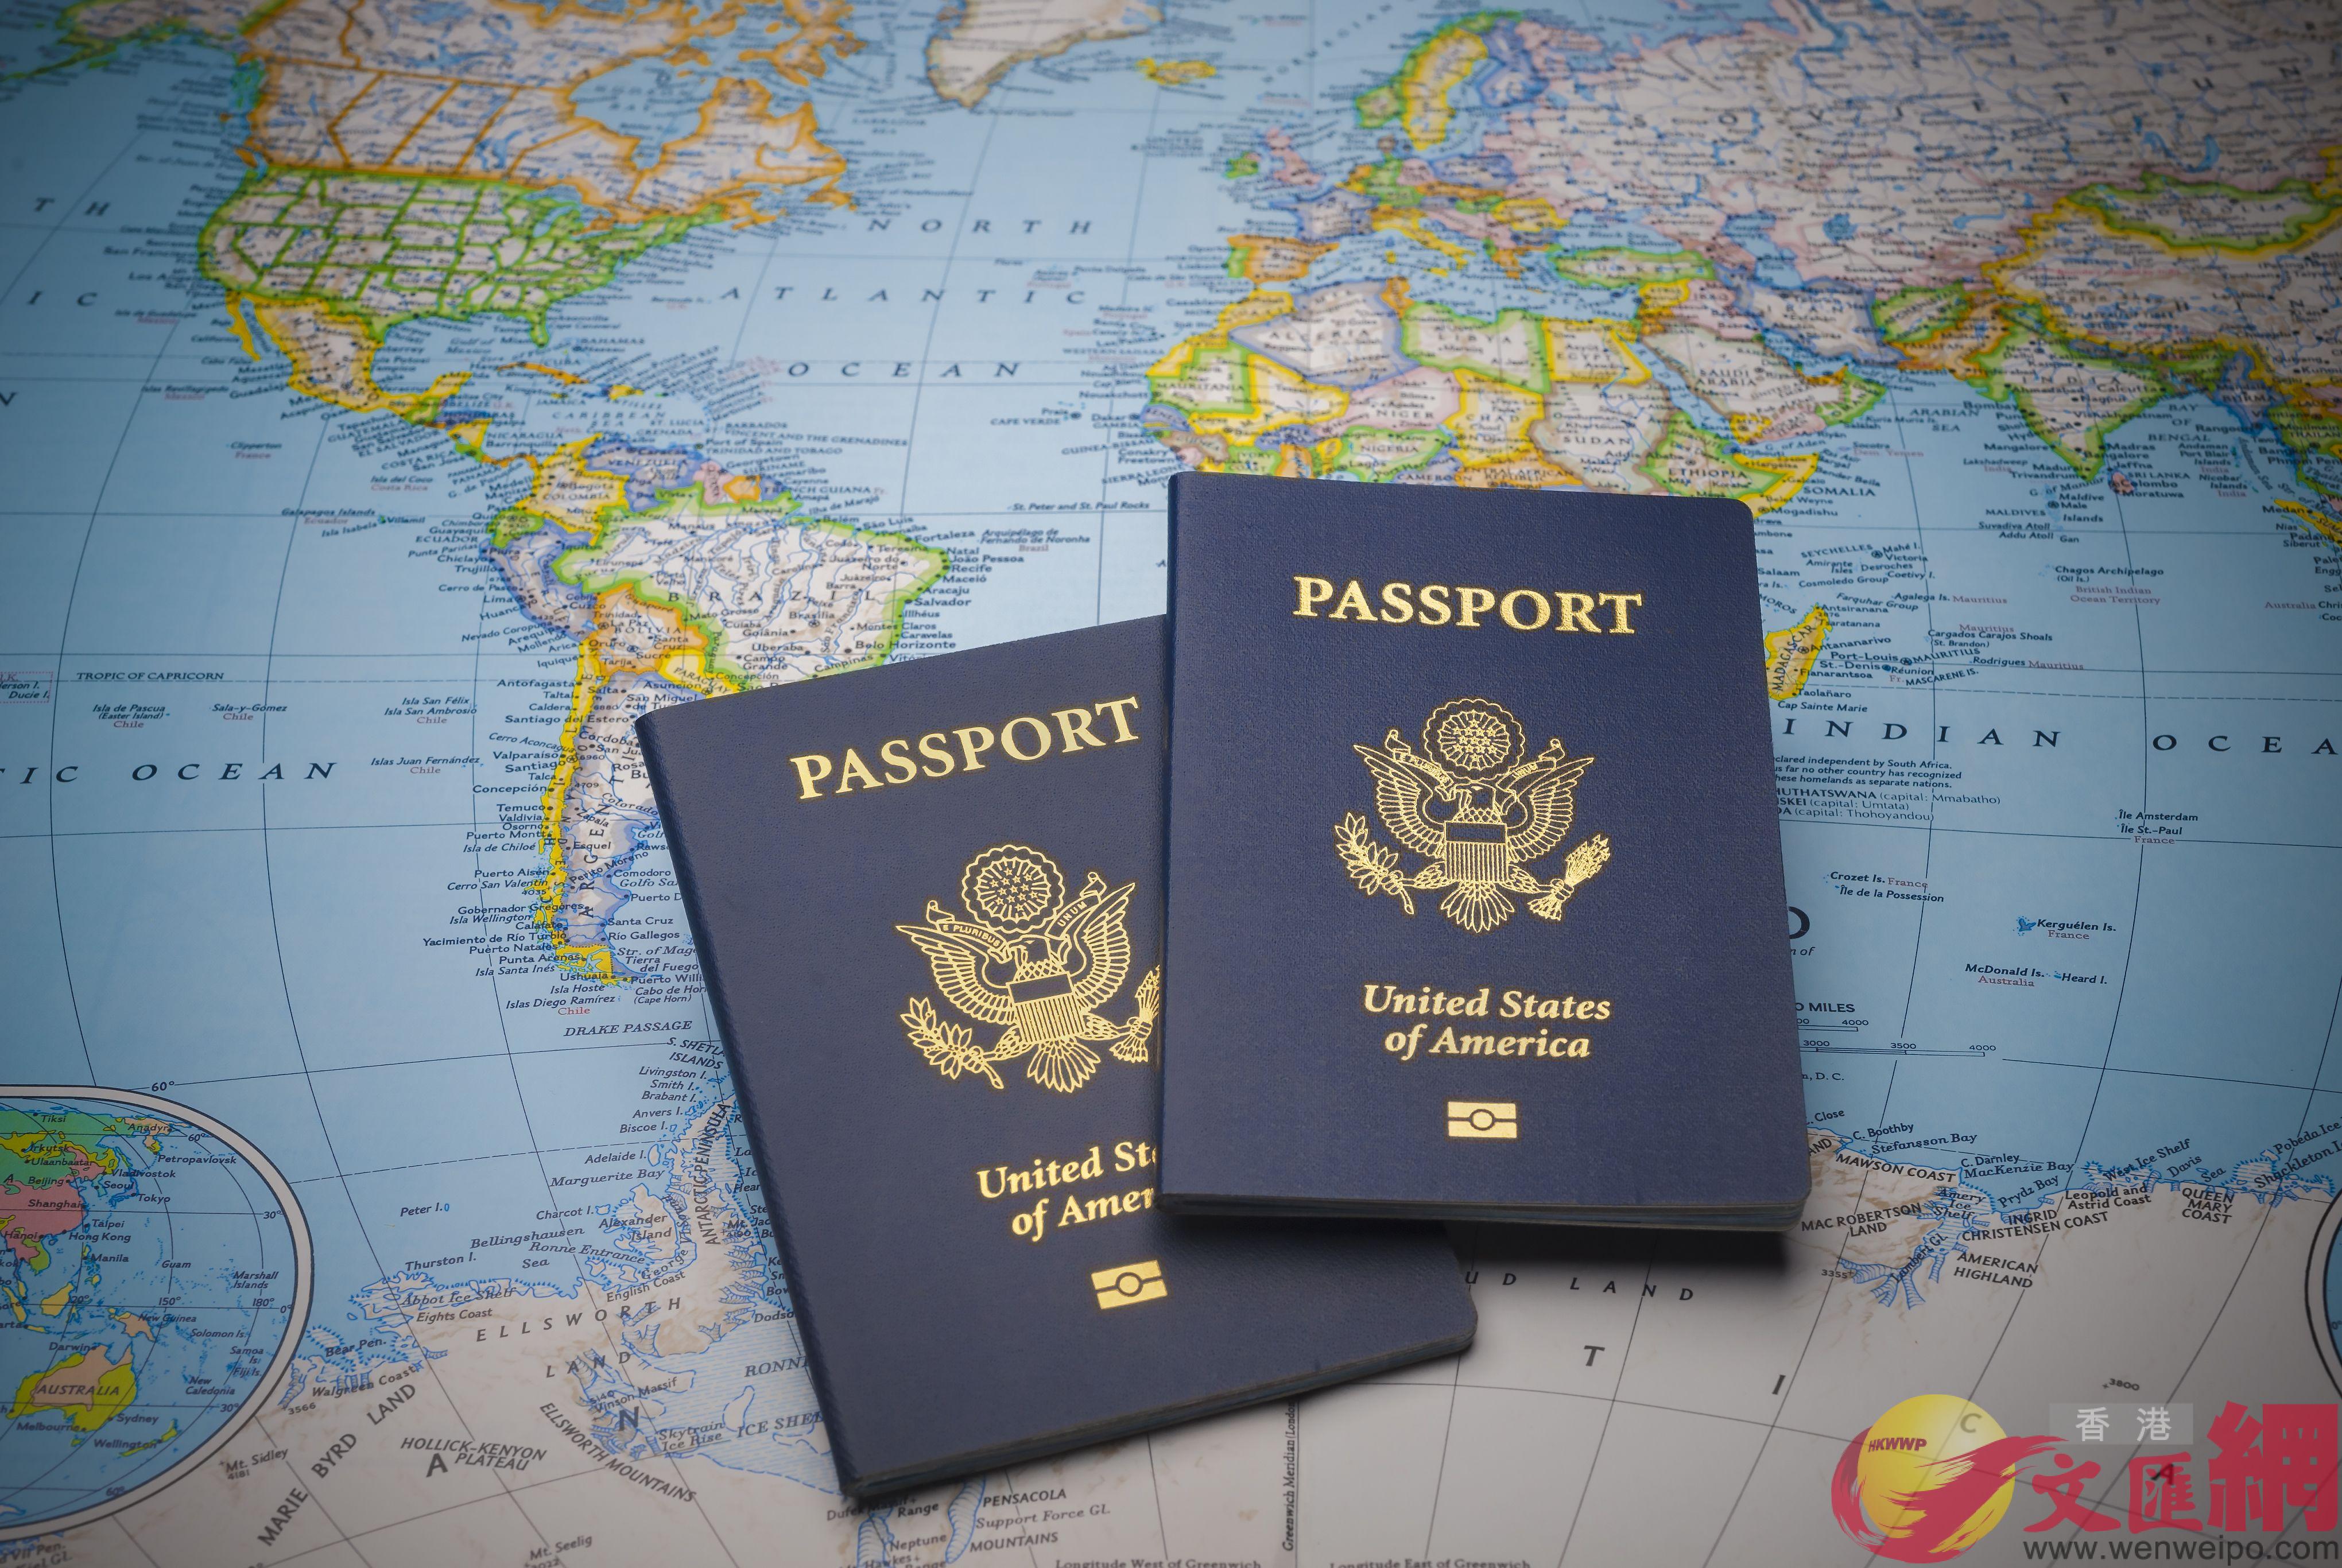 日本B新加坡及韓國護照可免簽證自由通行189個國家及地區A並列u全球最強護照v榜首C圖為美國護照C 文匯報資料圖片